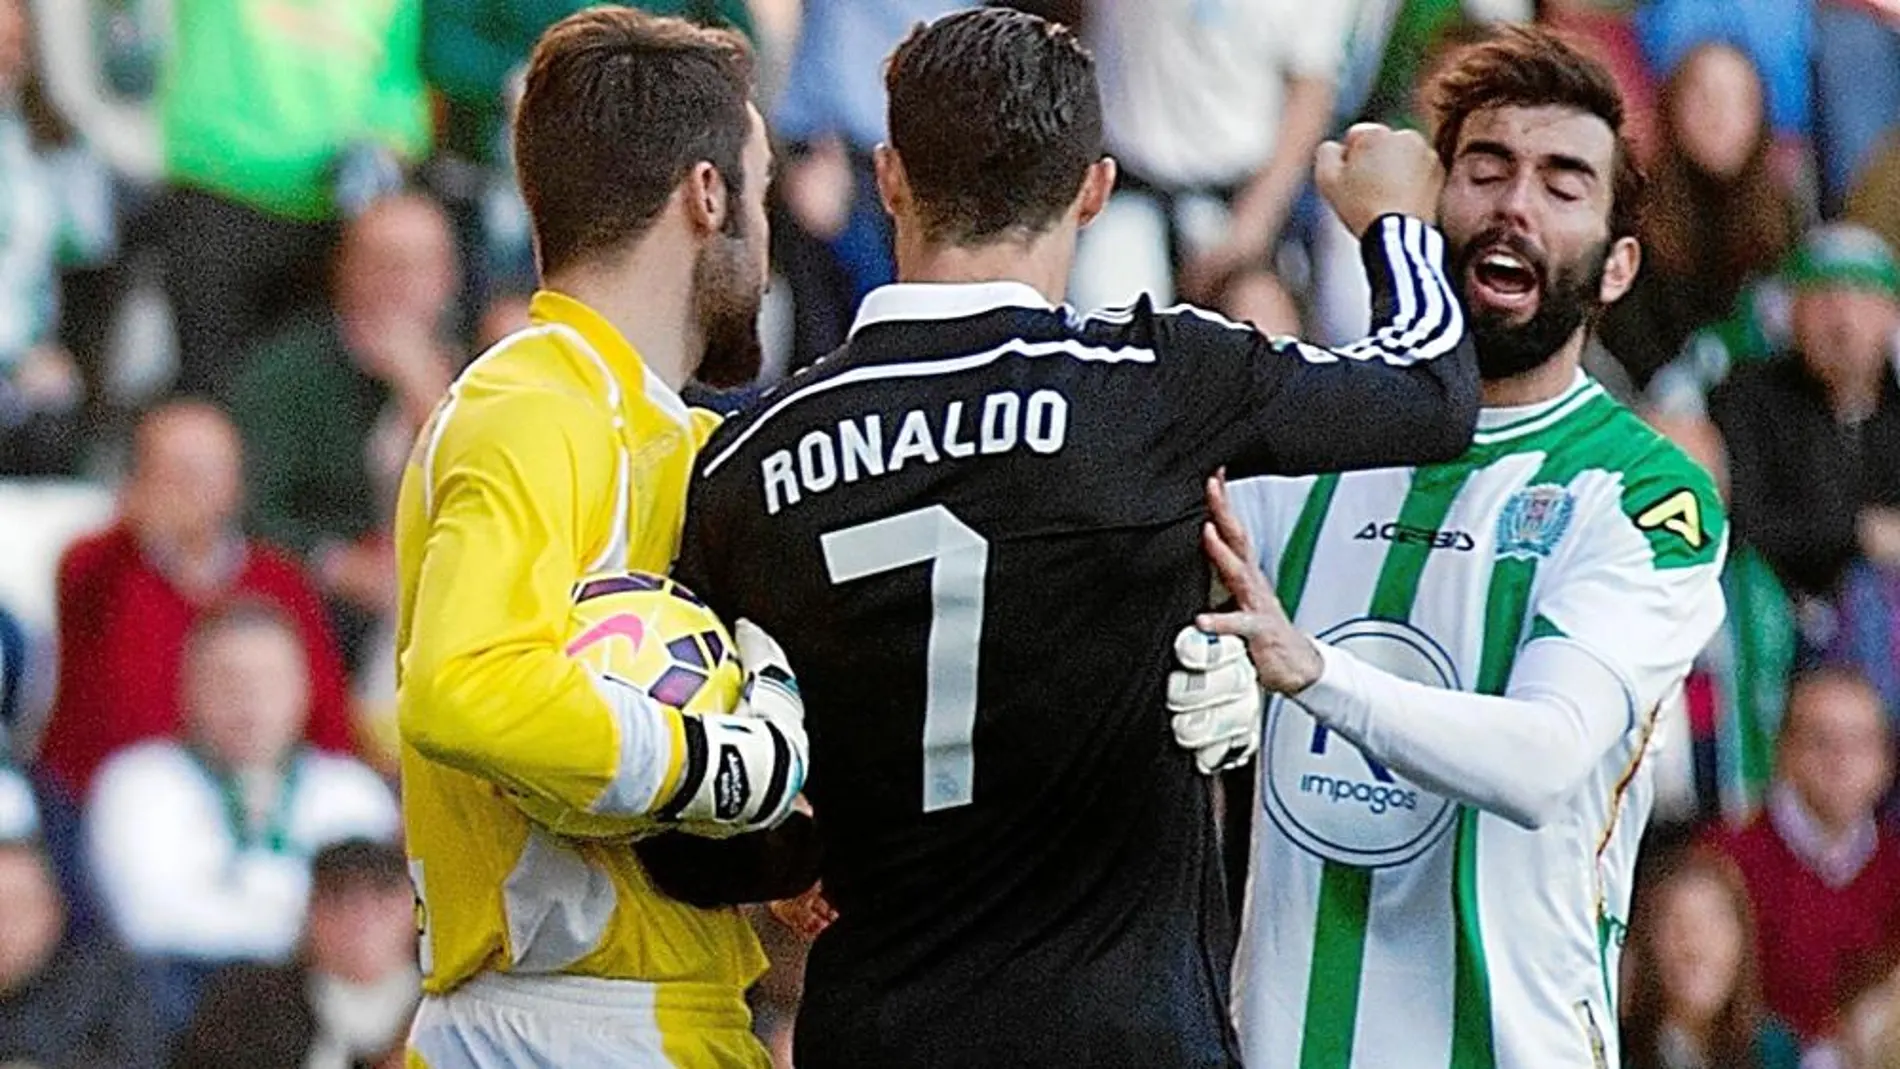 Cristiano Ronaldo golpeó a Edimar, el jugador del Córdoba, tras una jugada en la que no consiguió llegar a la pelota. Fue expulsado y ahora se espera la sanción que pueda recibir